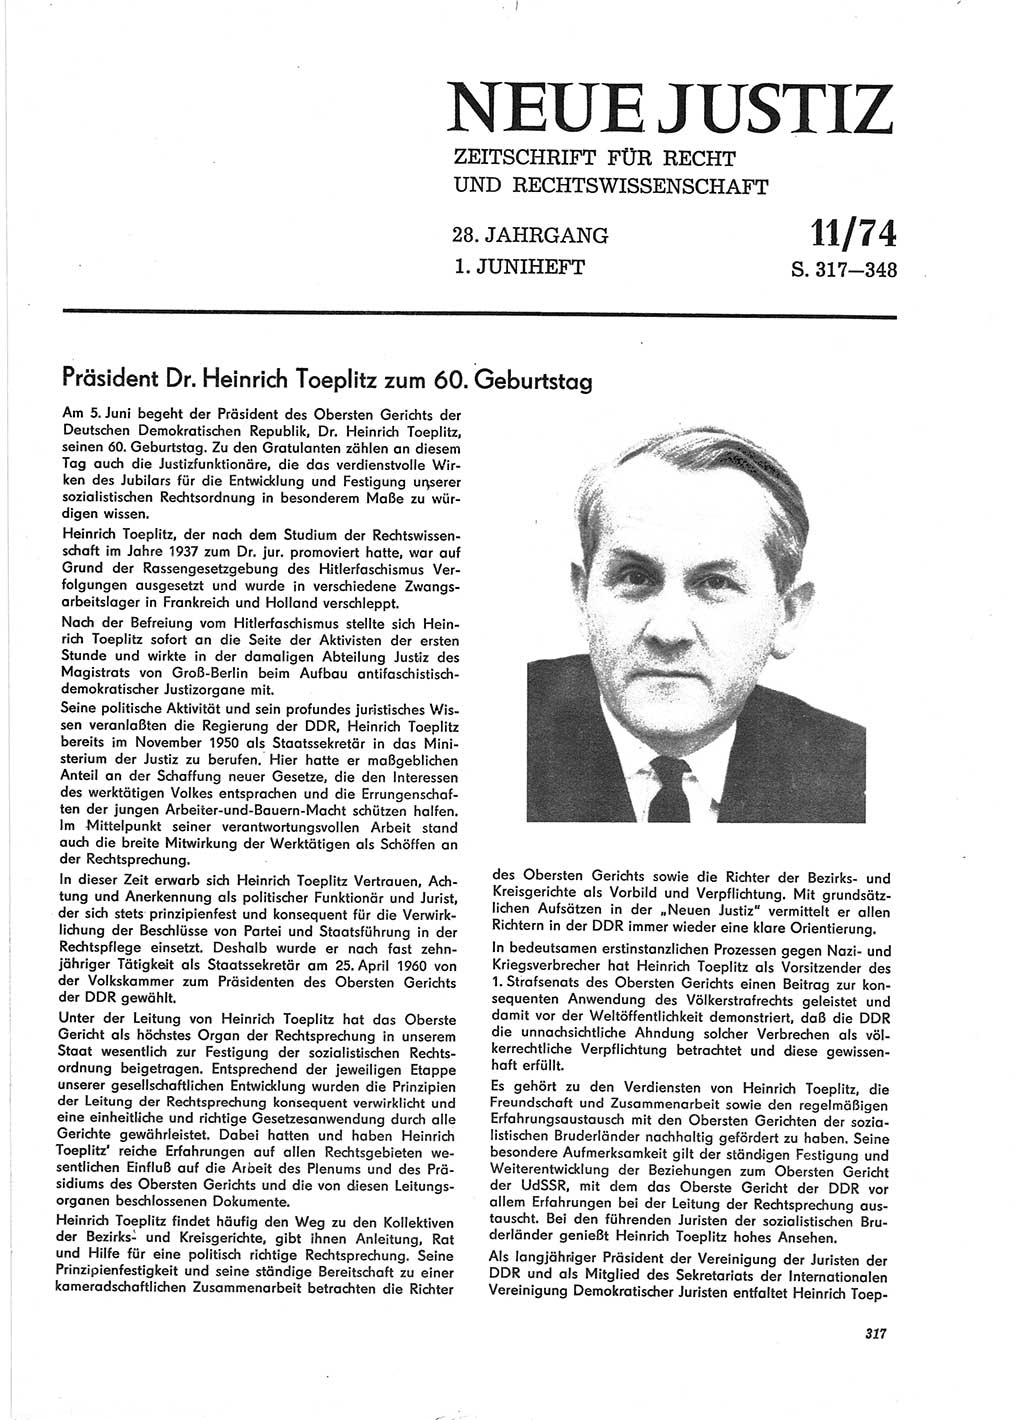 Neue Justiz (NJ), Zeitschrift für Recht und Rechtswissenschaft [Deutsche Demokratische Republik (DDR)], 28. Jahrgang 1974, Seite 317 (NJ DDR 1974, S. 317)